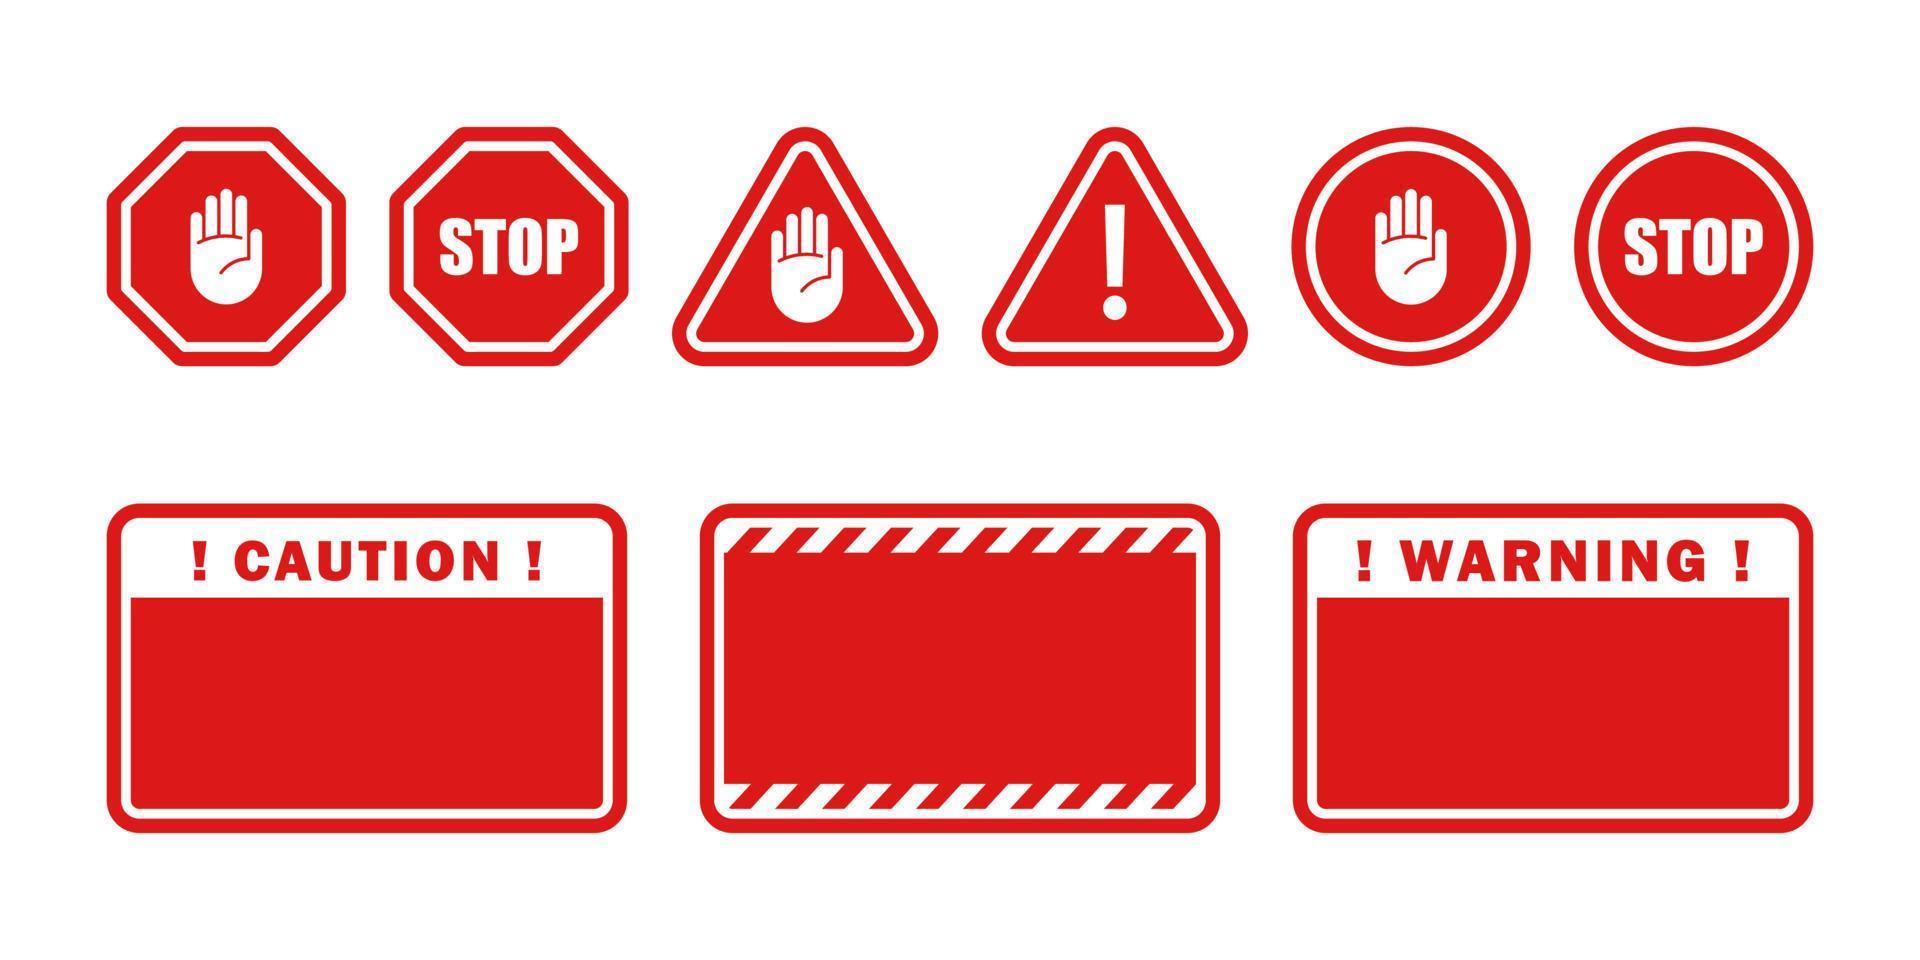 Atenção sinais. proibição sinais. símbolos Perigo e Pare sinais. vetor escalável gráficos